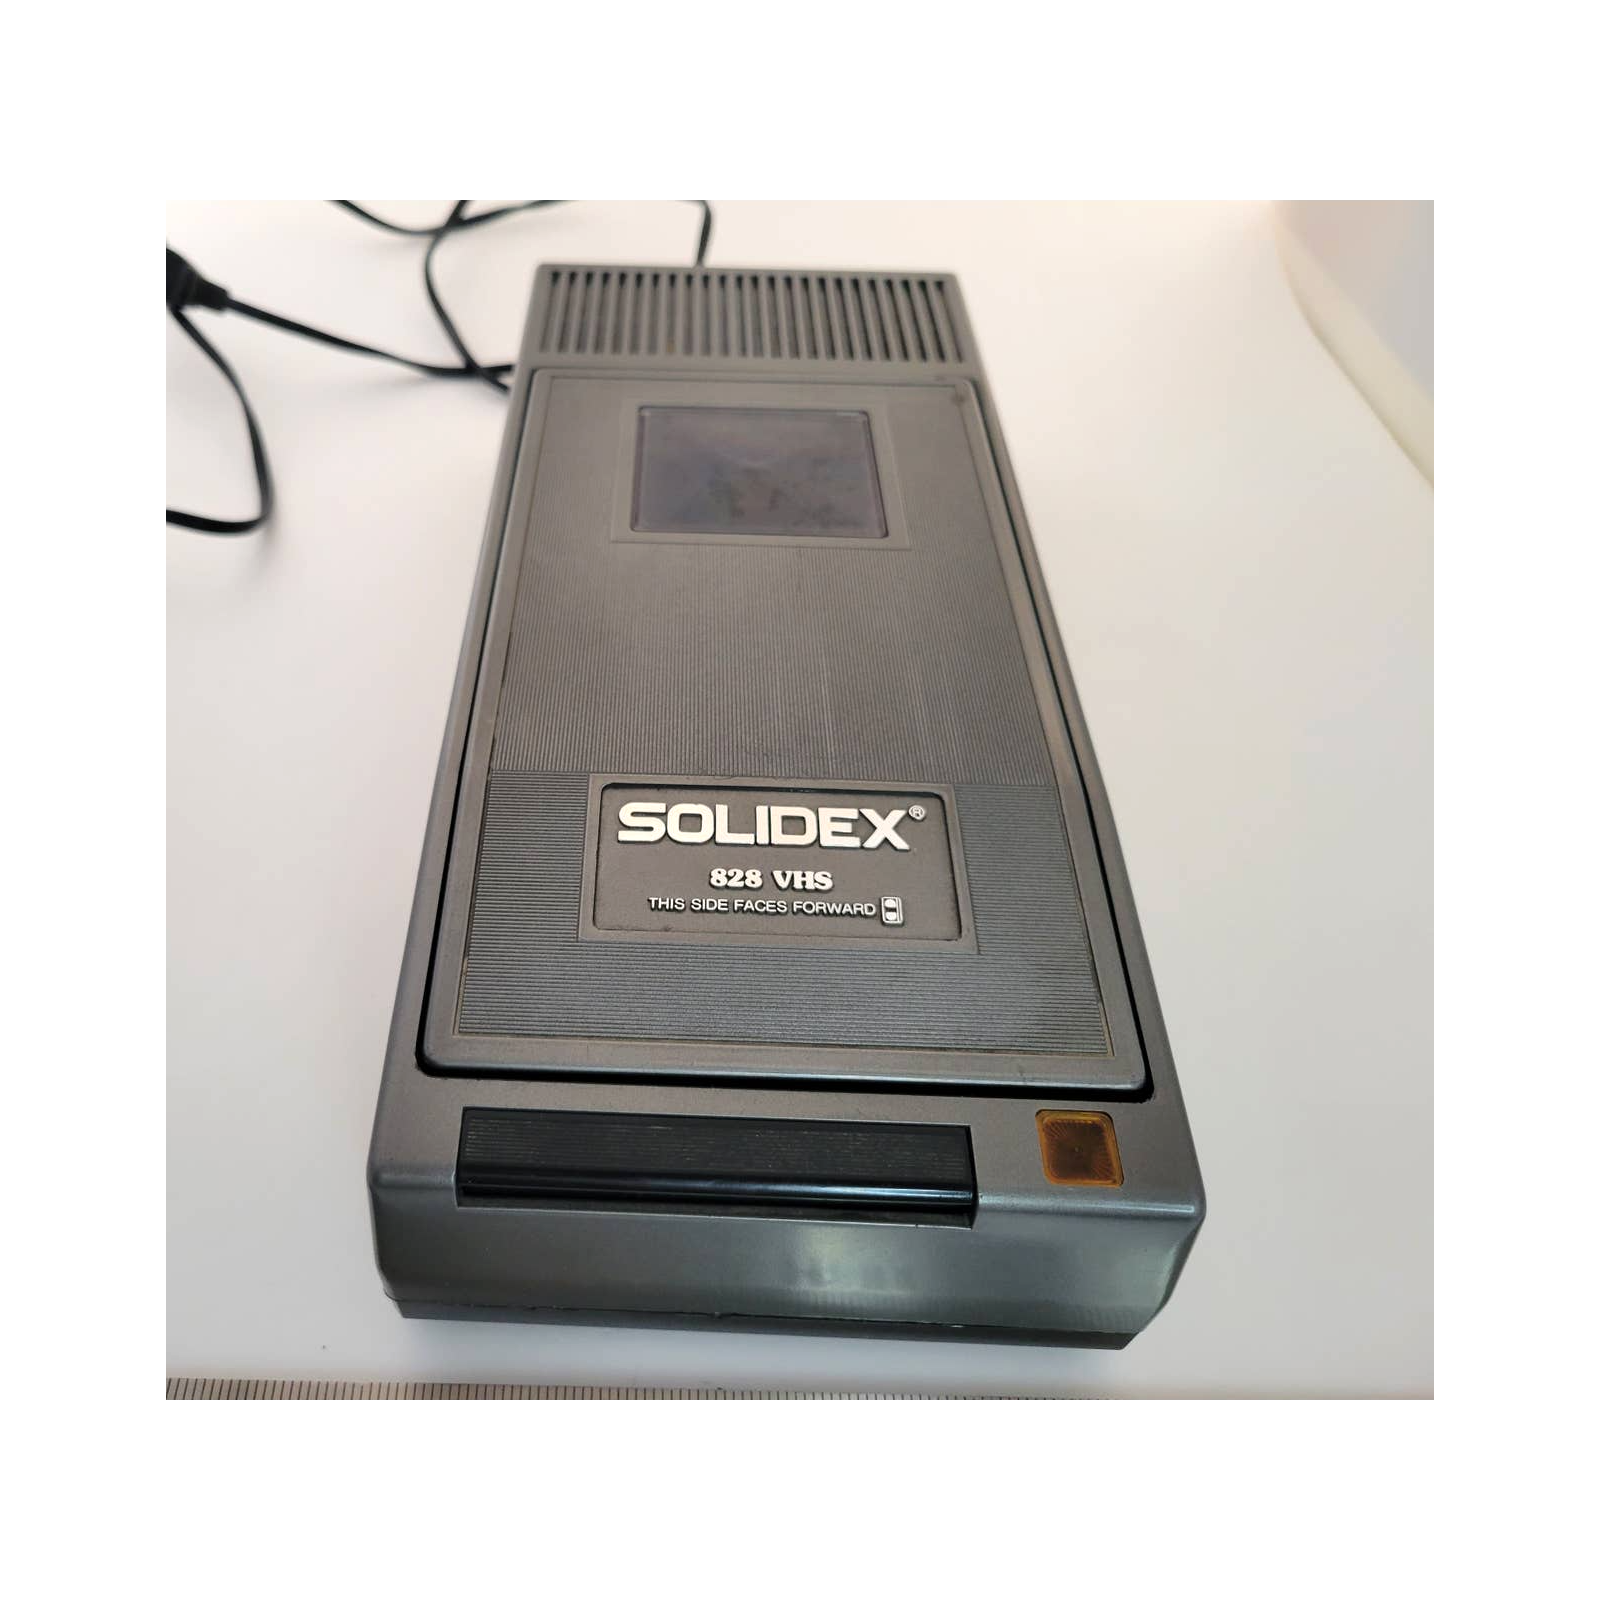 Solidex 828 VHS Rewinder (Parts only)